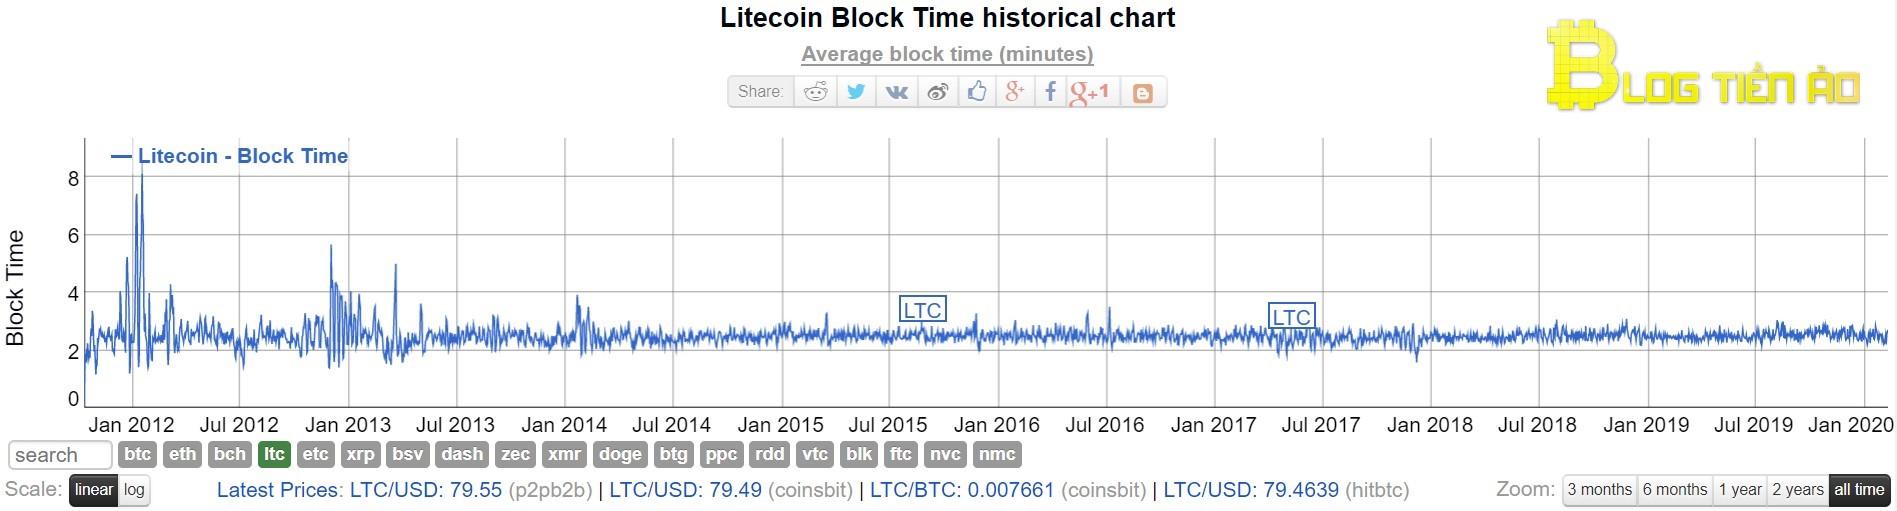 Oras ng paglikha ng block ng Litecoin